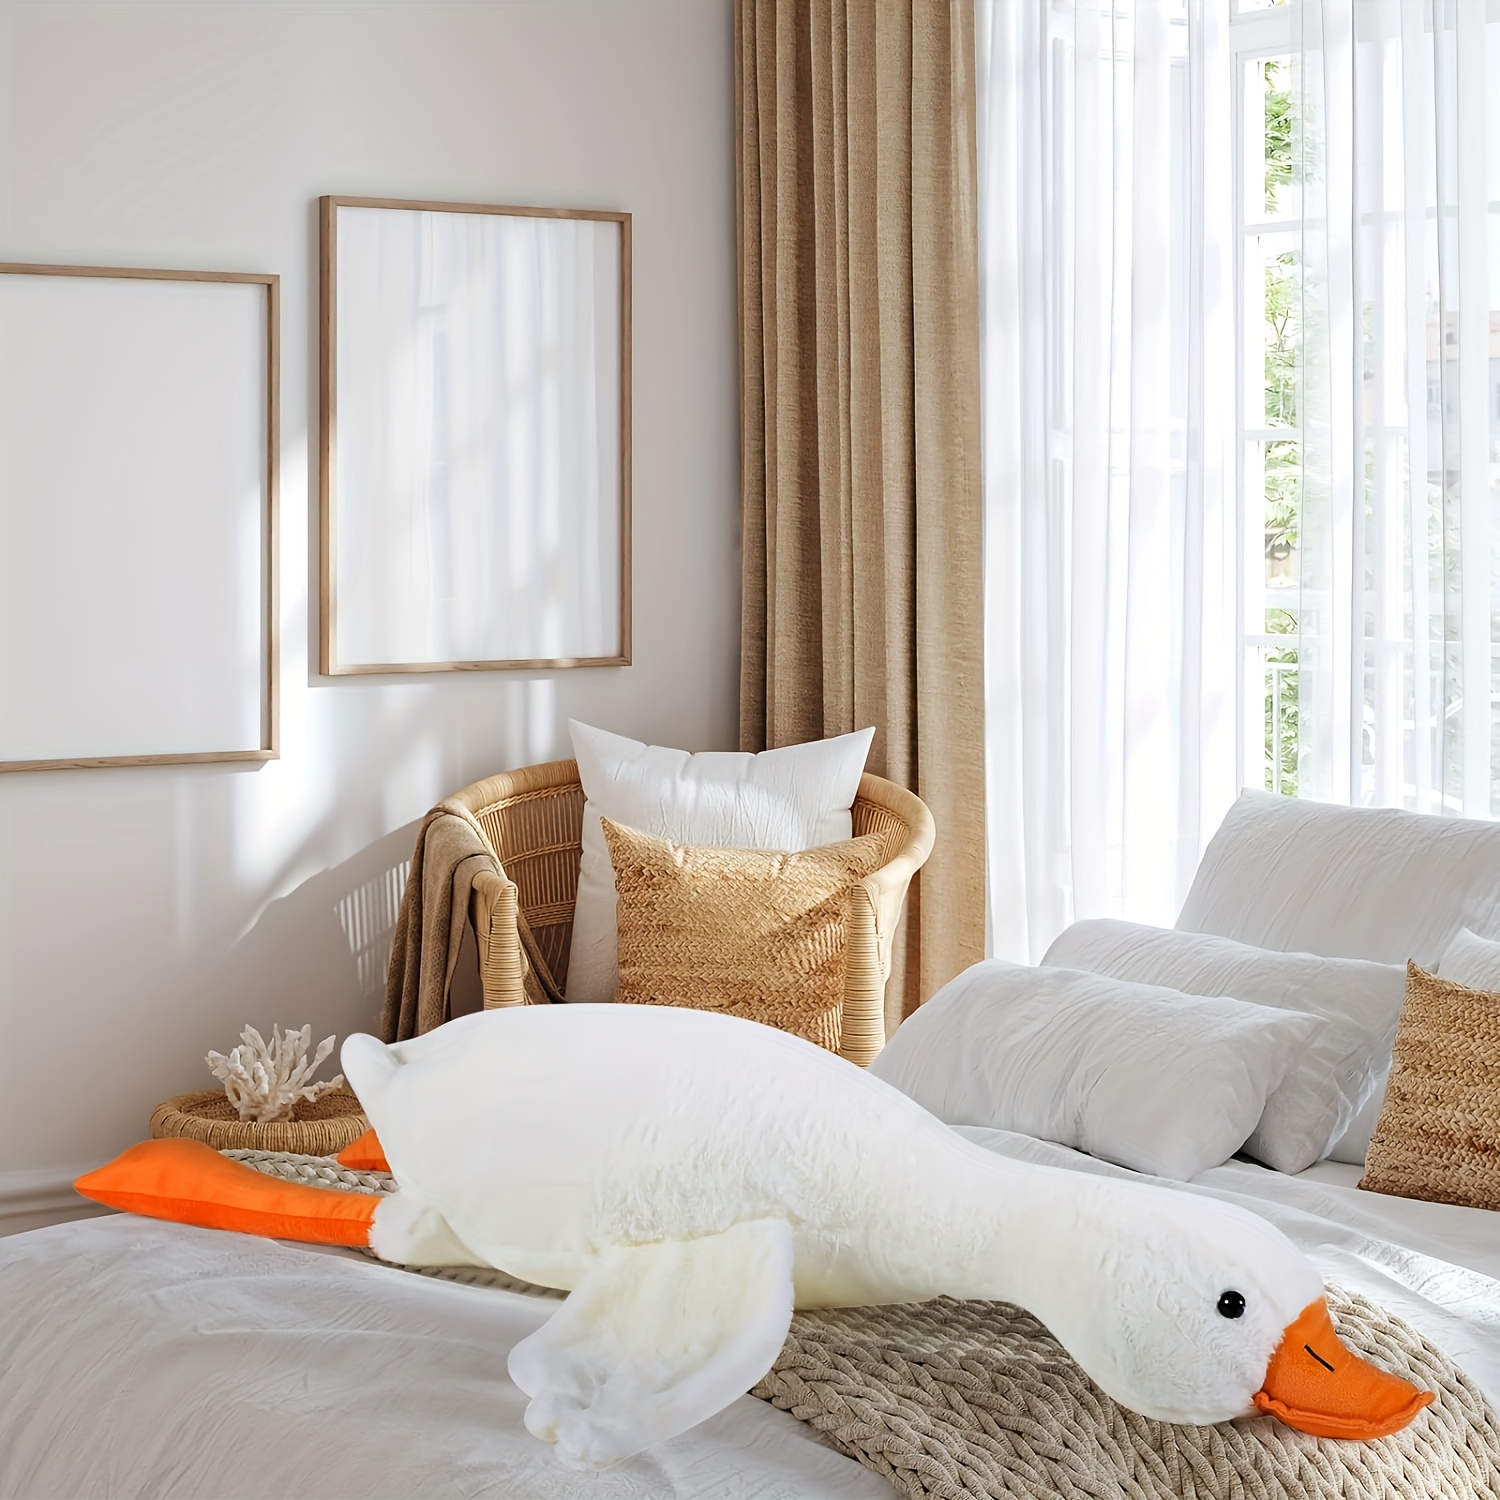 Peluche de cisne, accesorio útil como almohada para dormir, elaborado con  material esponjoso para una mayor comodidad.